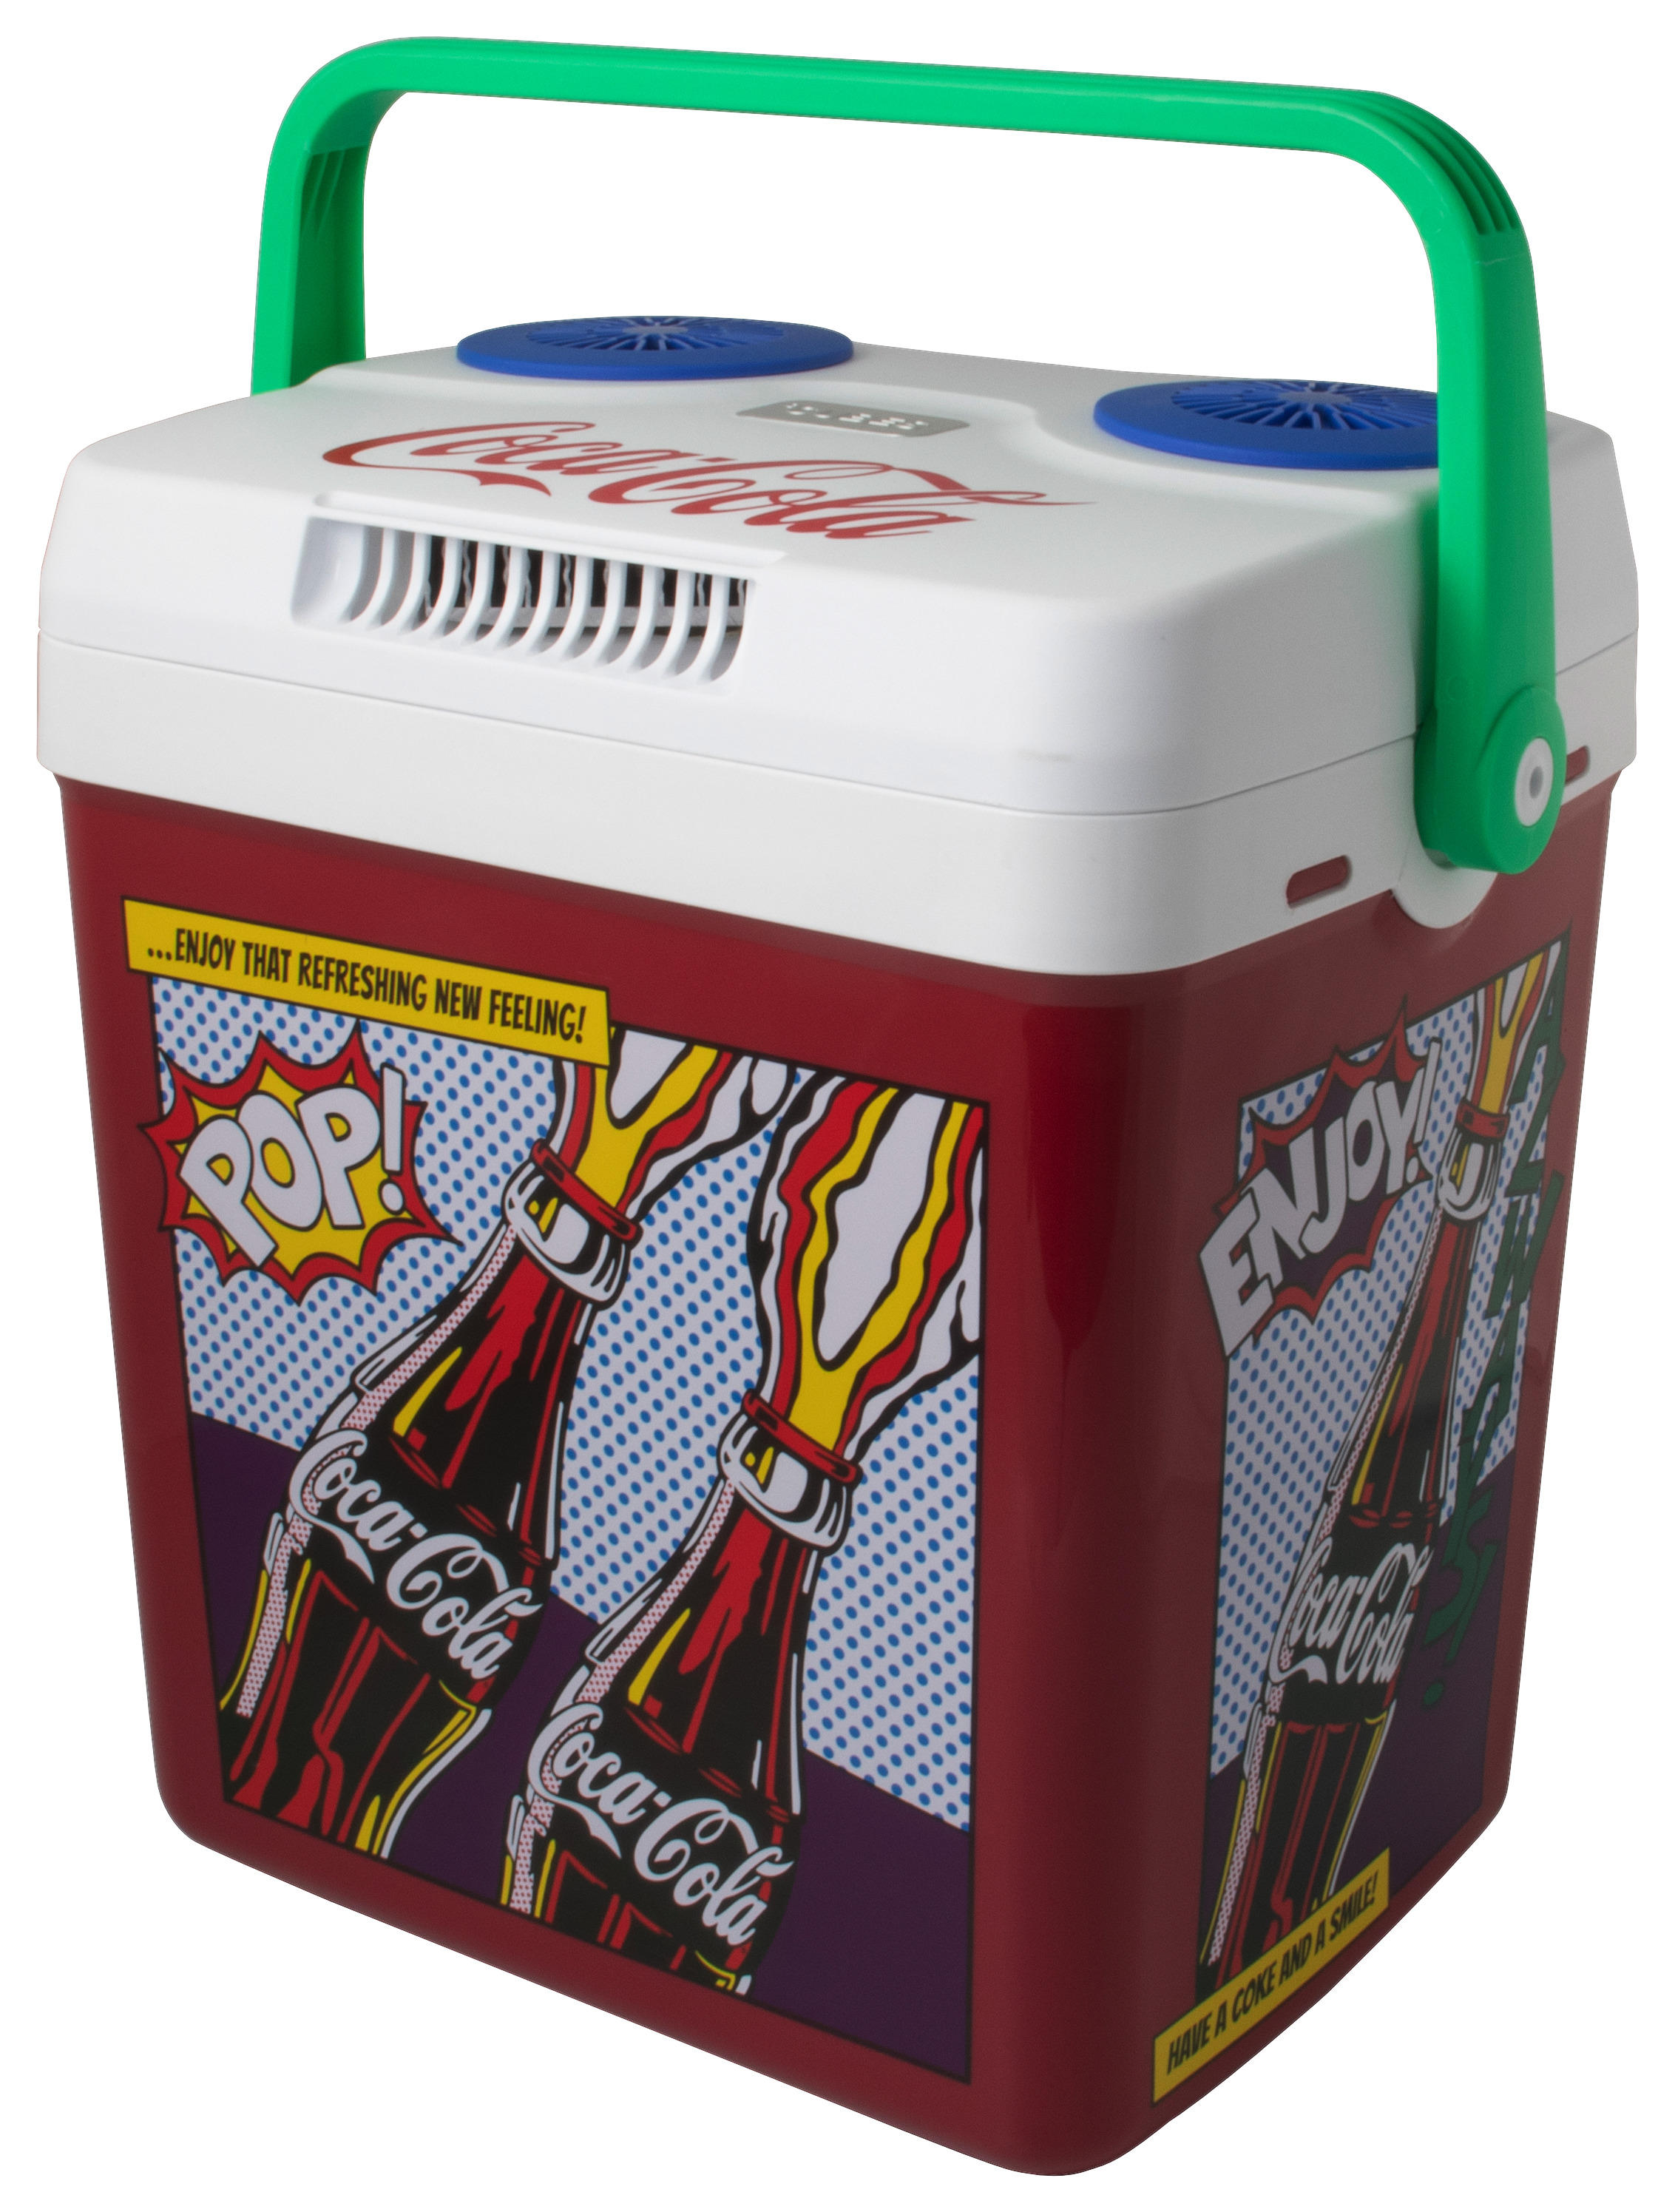 Cubes Elektro-kühlbox Coca Cola Cb806 Bunt B/h/t: Ca. 39,9x42,2x29,8 Cm Cube_coolbox_coca-Cola Cb806 - bunt (39,90/42,20/29,80cm)